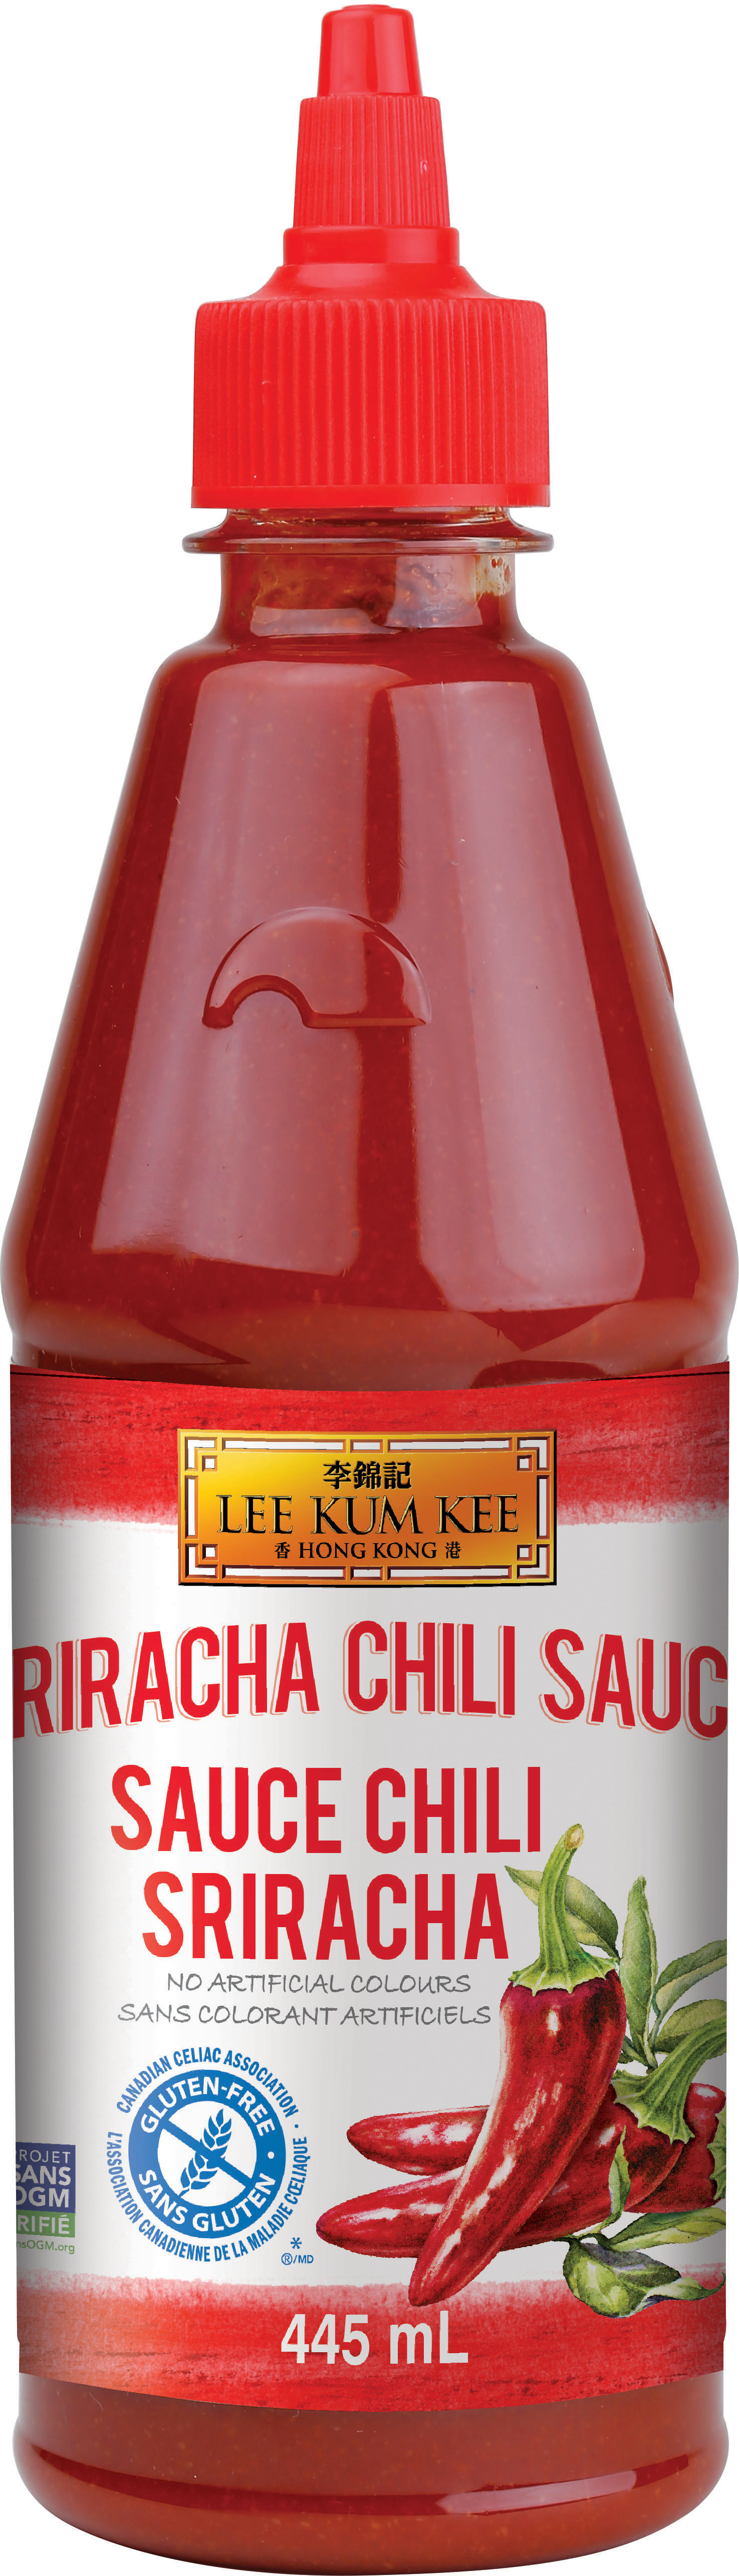 Sriracha Chili Sauce (Non-GMO) 445 mL, Bottle